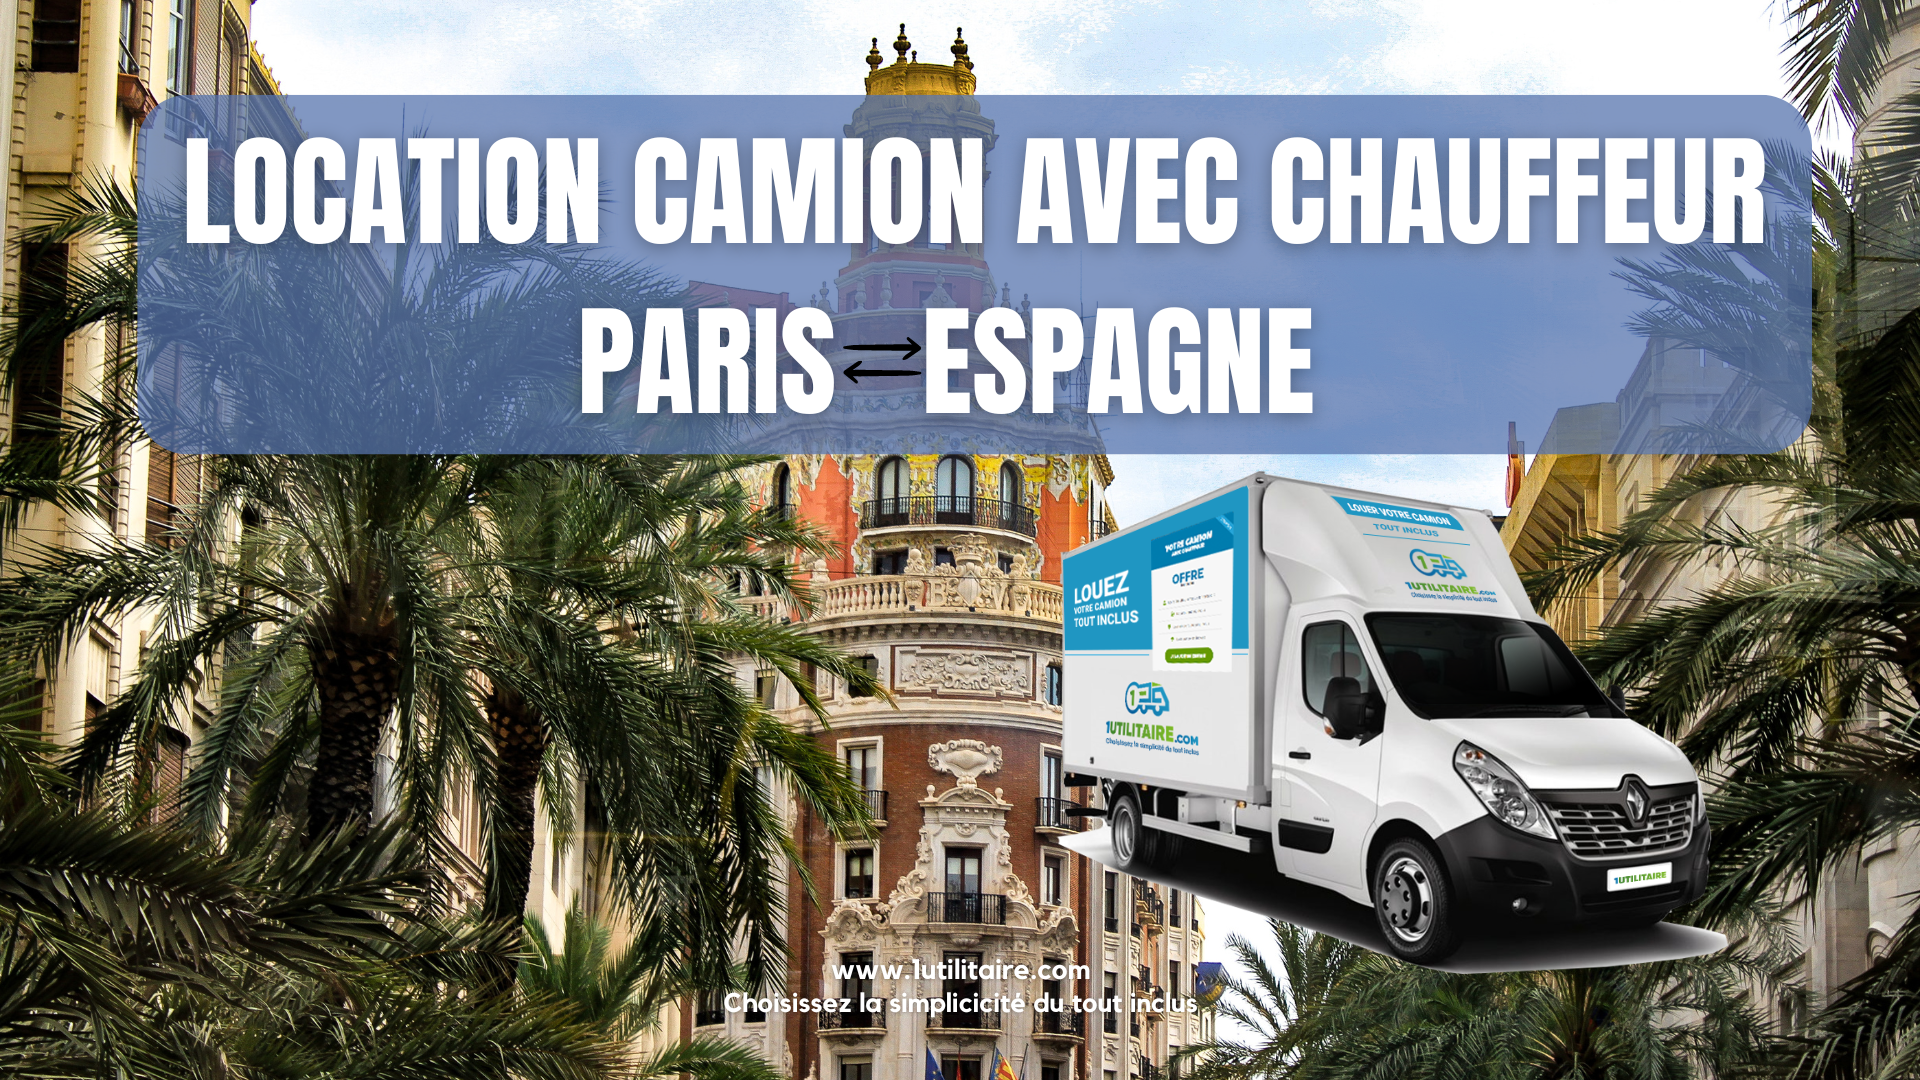 Location camion avec chauffeur Paris - Espagne